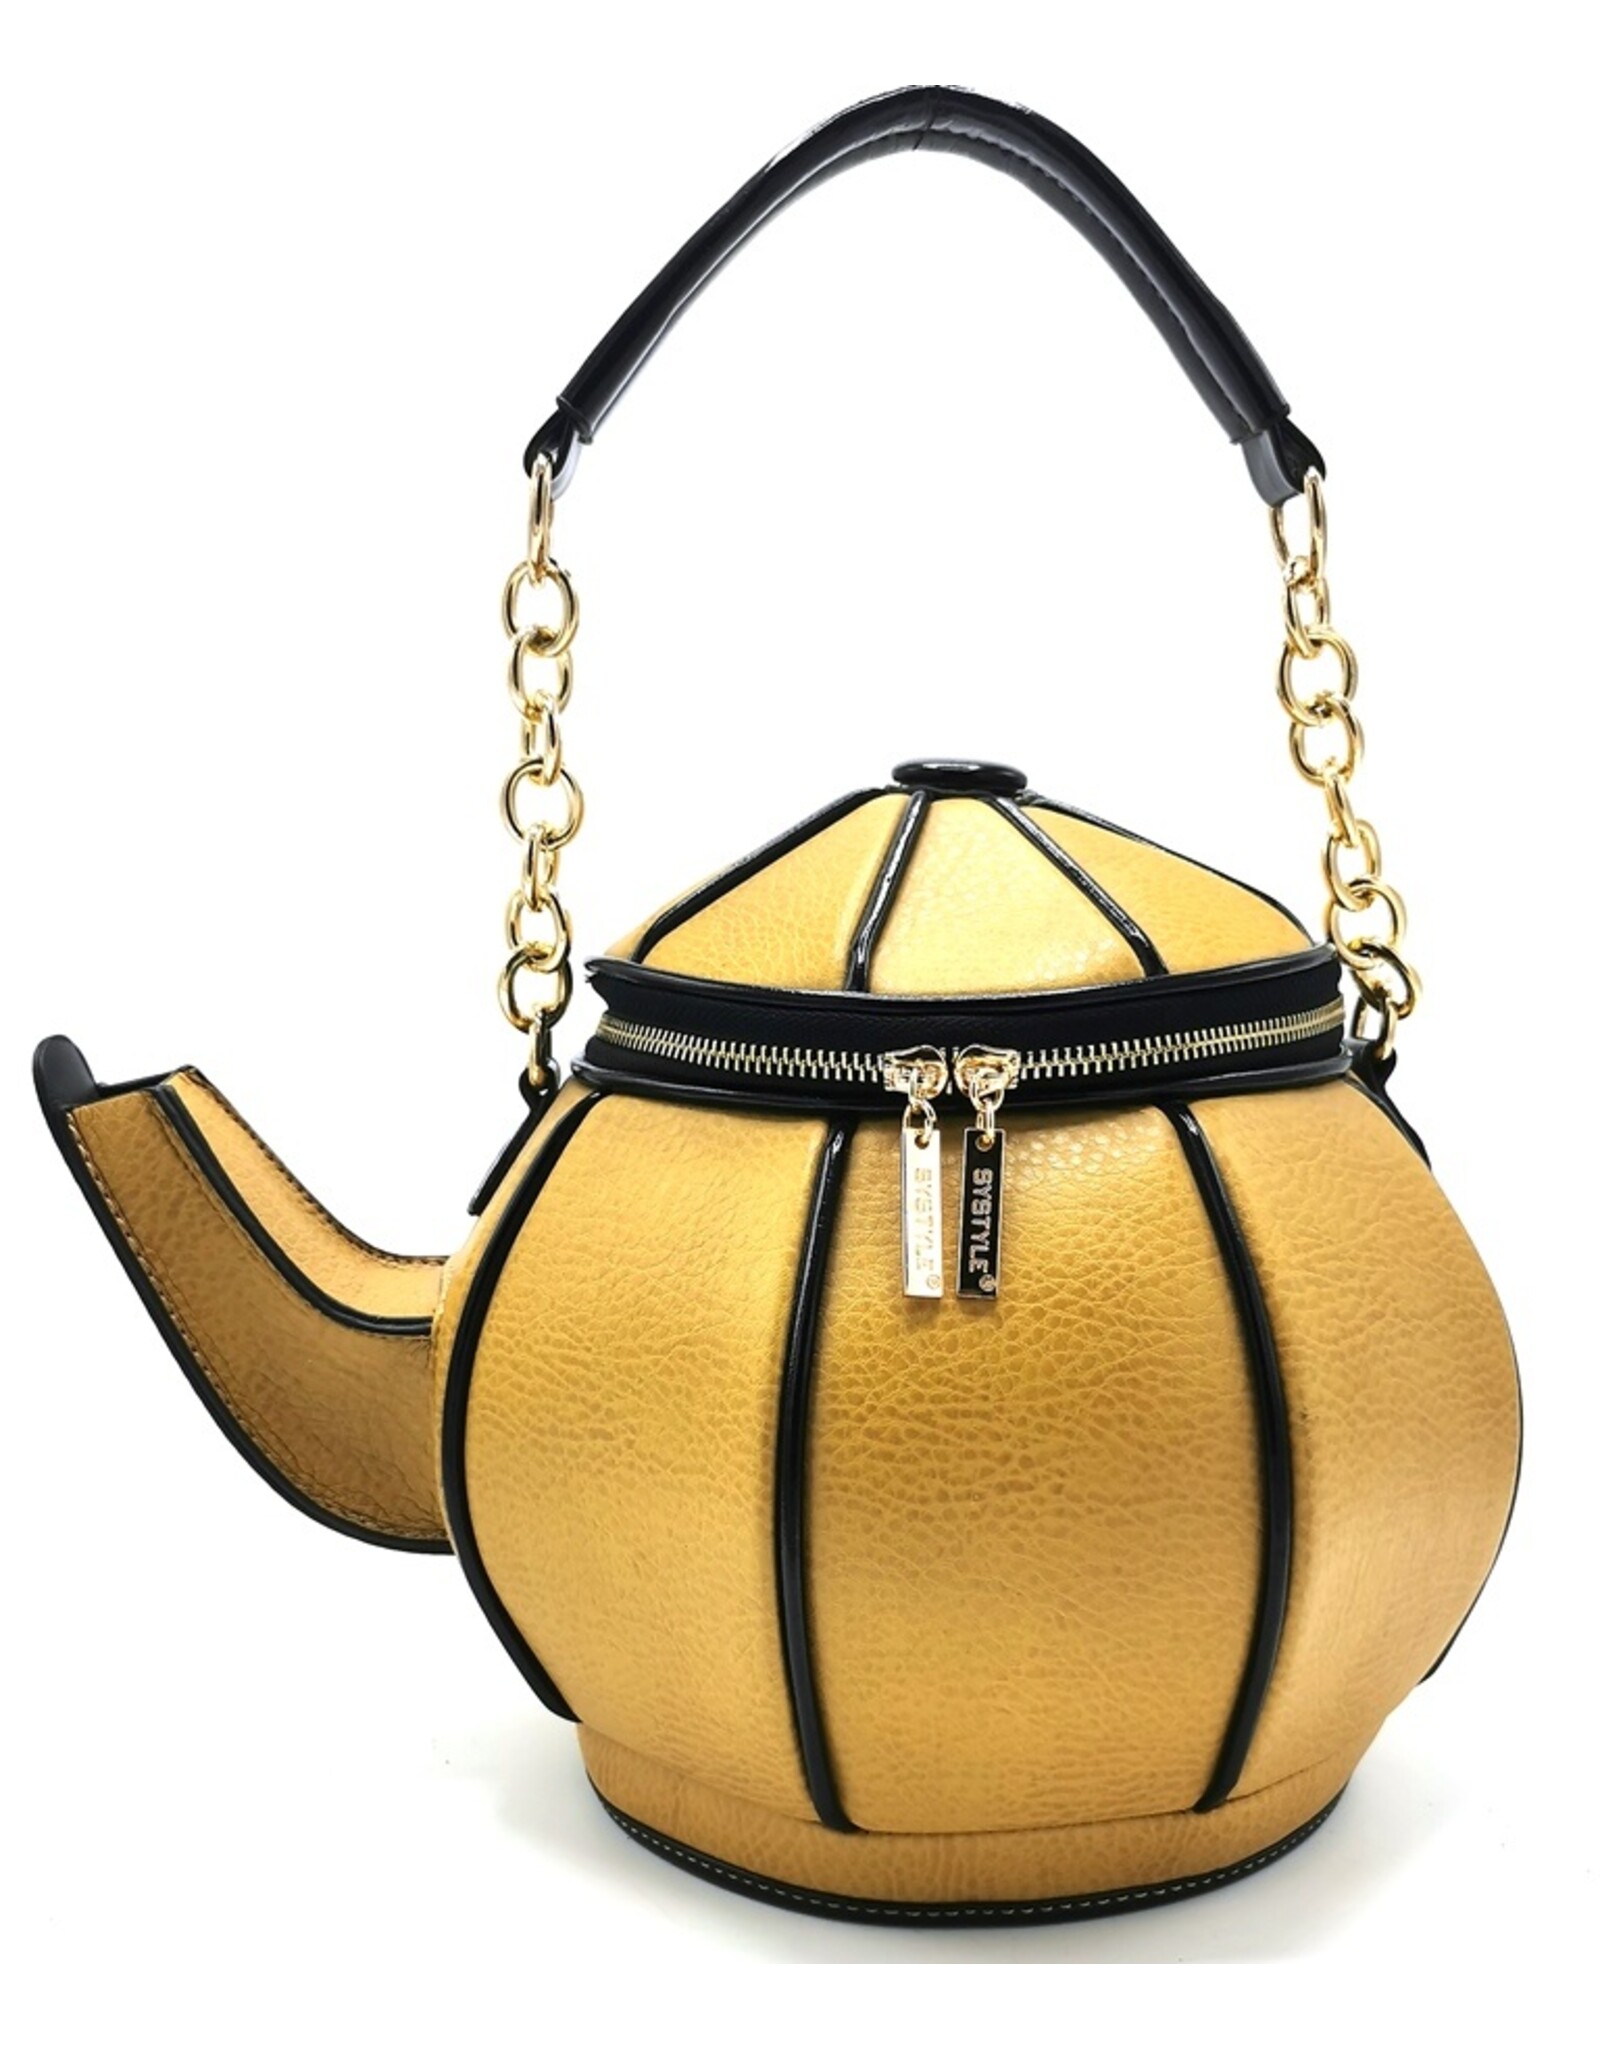 Systyle Fantasy bags and wallets - Teapot handbag Mustard Yellow